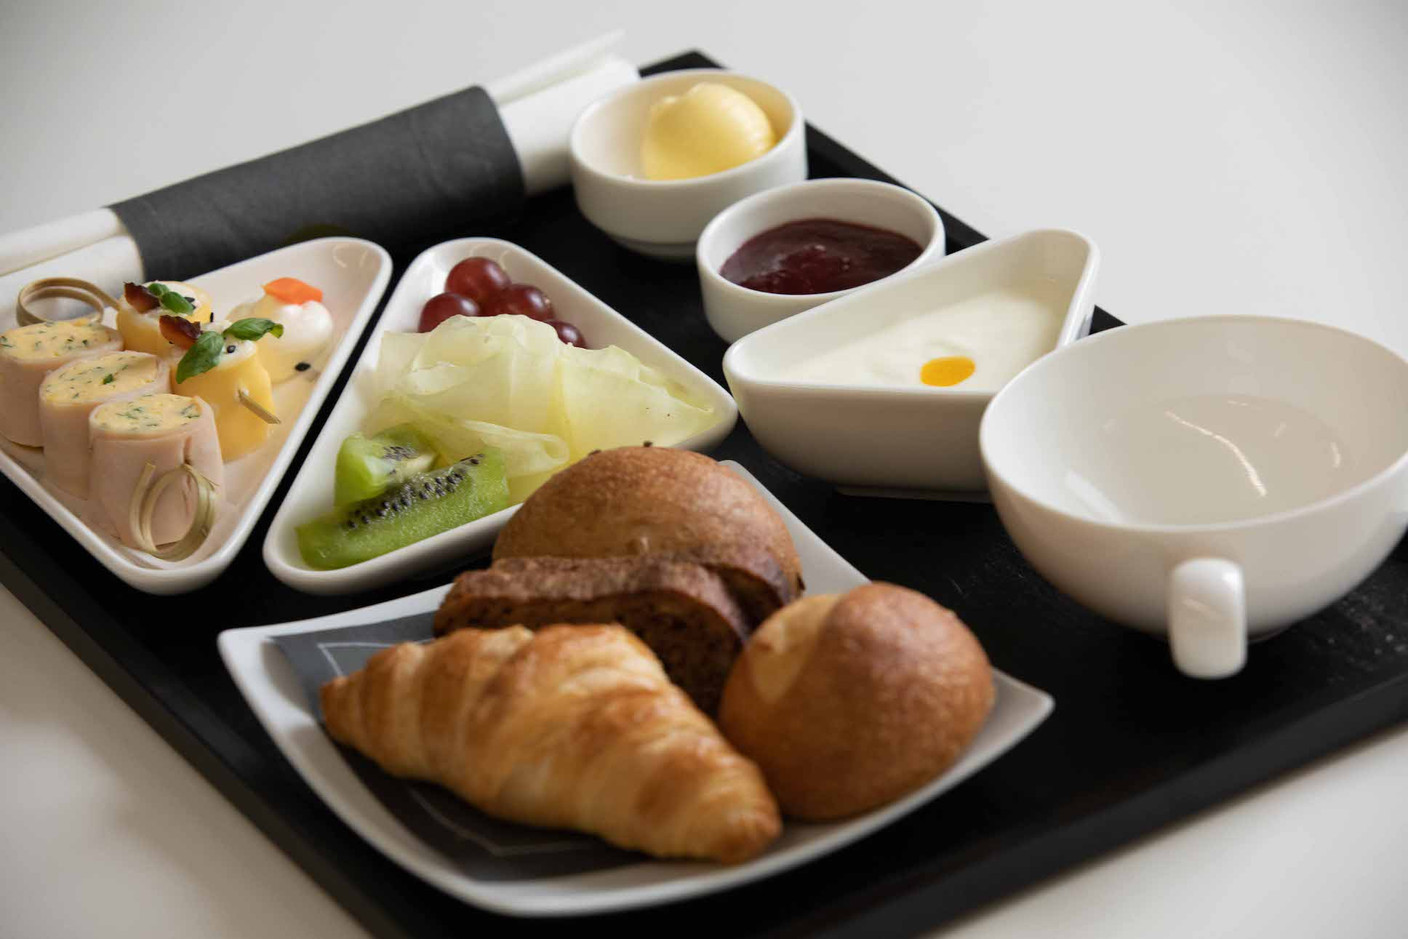 Excellence artisanale et gourmandise au programme pour les futurs passagers de la classe affaires Luxair (Photo : LuxairGroup)